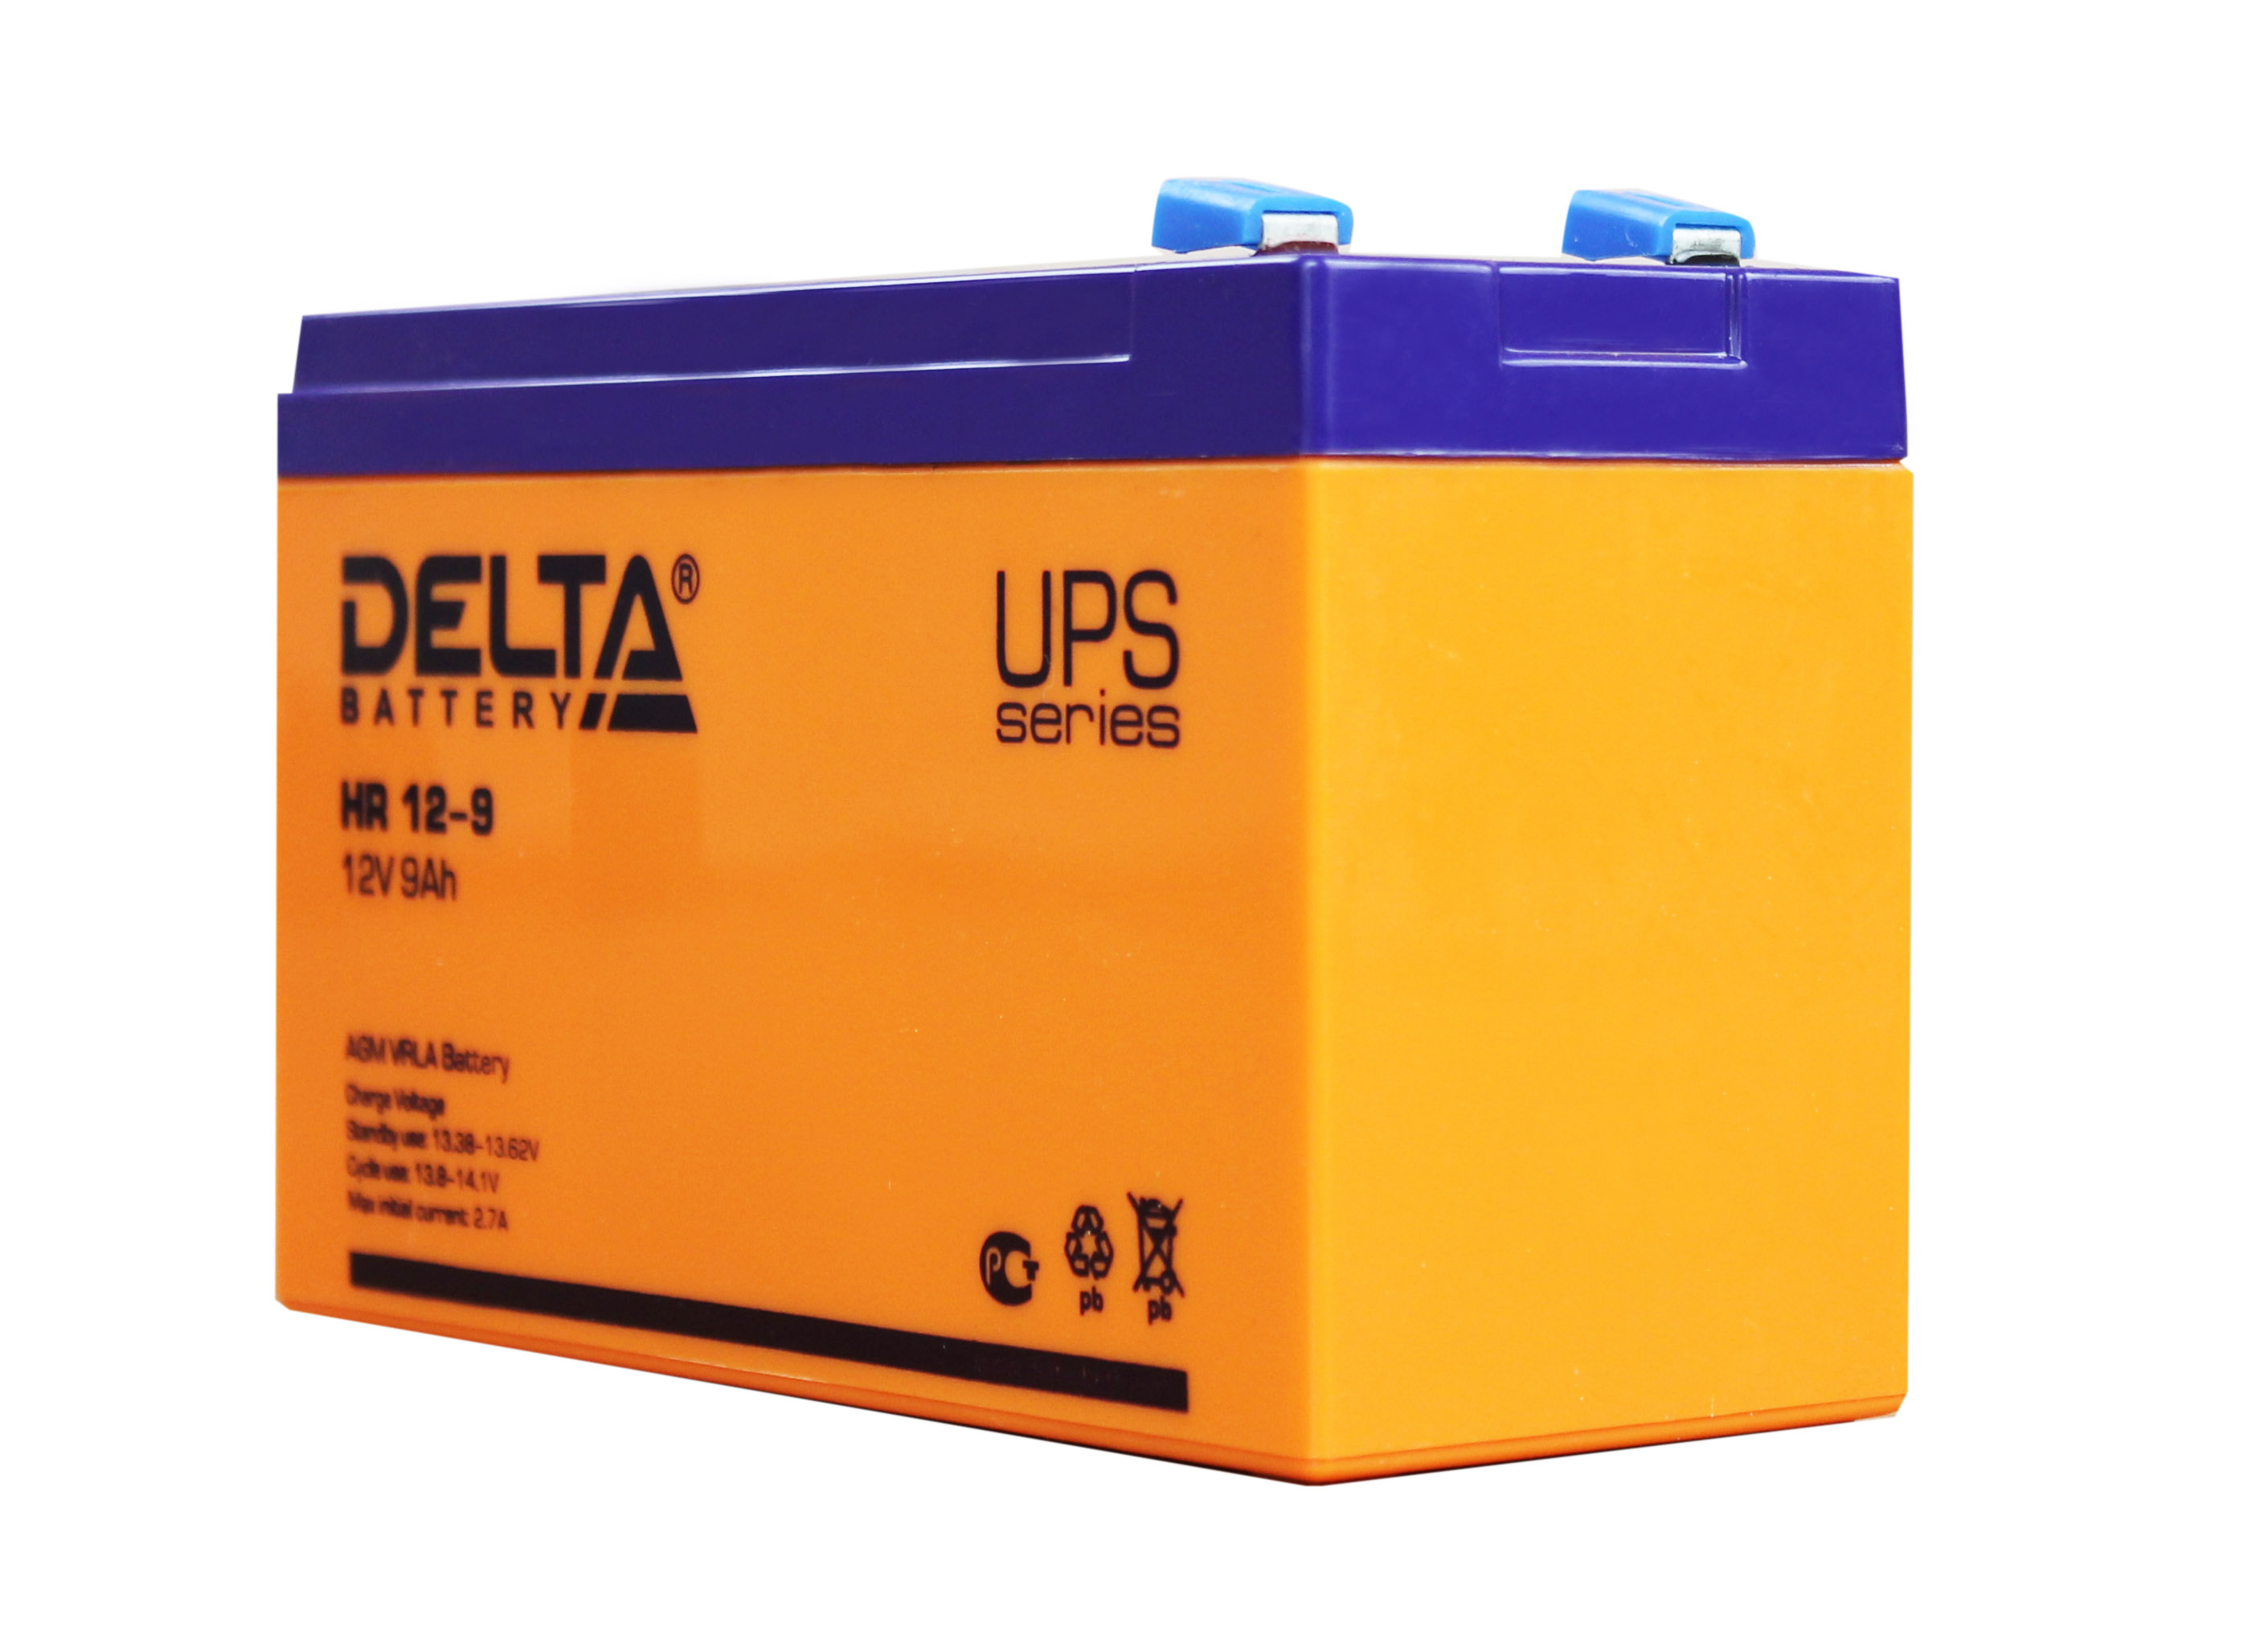 12v 9ah купить. Аккумуляторная батарея Delta HR 12-9 (12v / 9ah). АКБ Delta 12v 9ah. АКБ Дельта 9 Ah. Батарея Delta HR 12-9 12v 9ah.